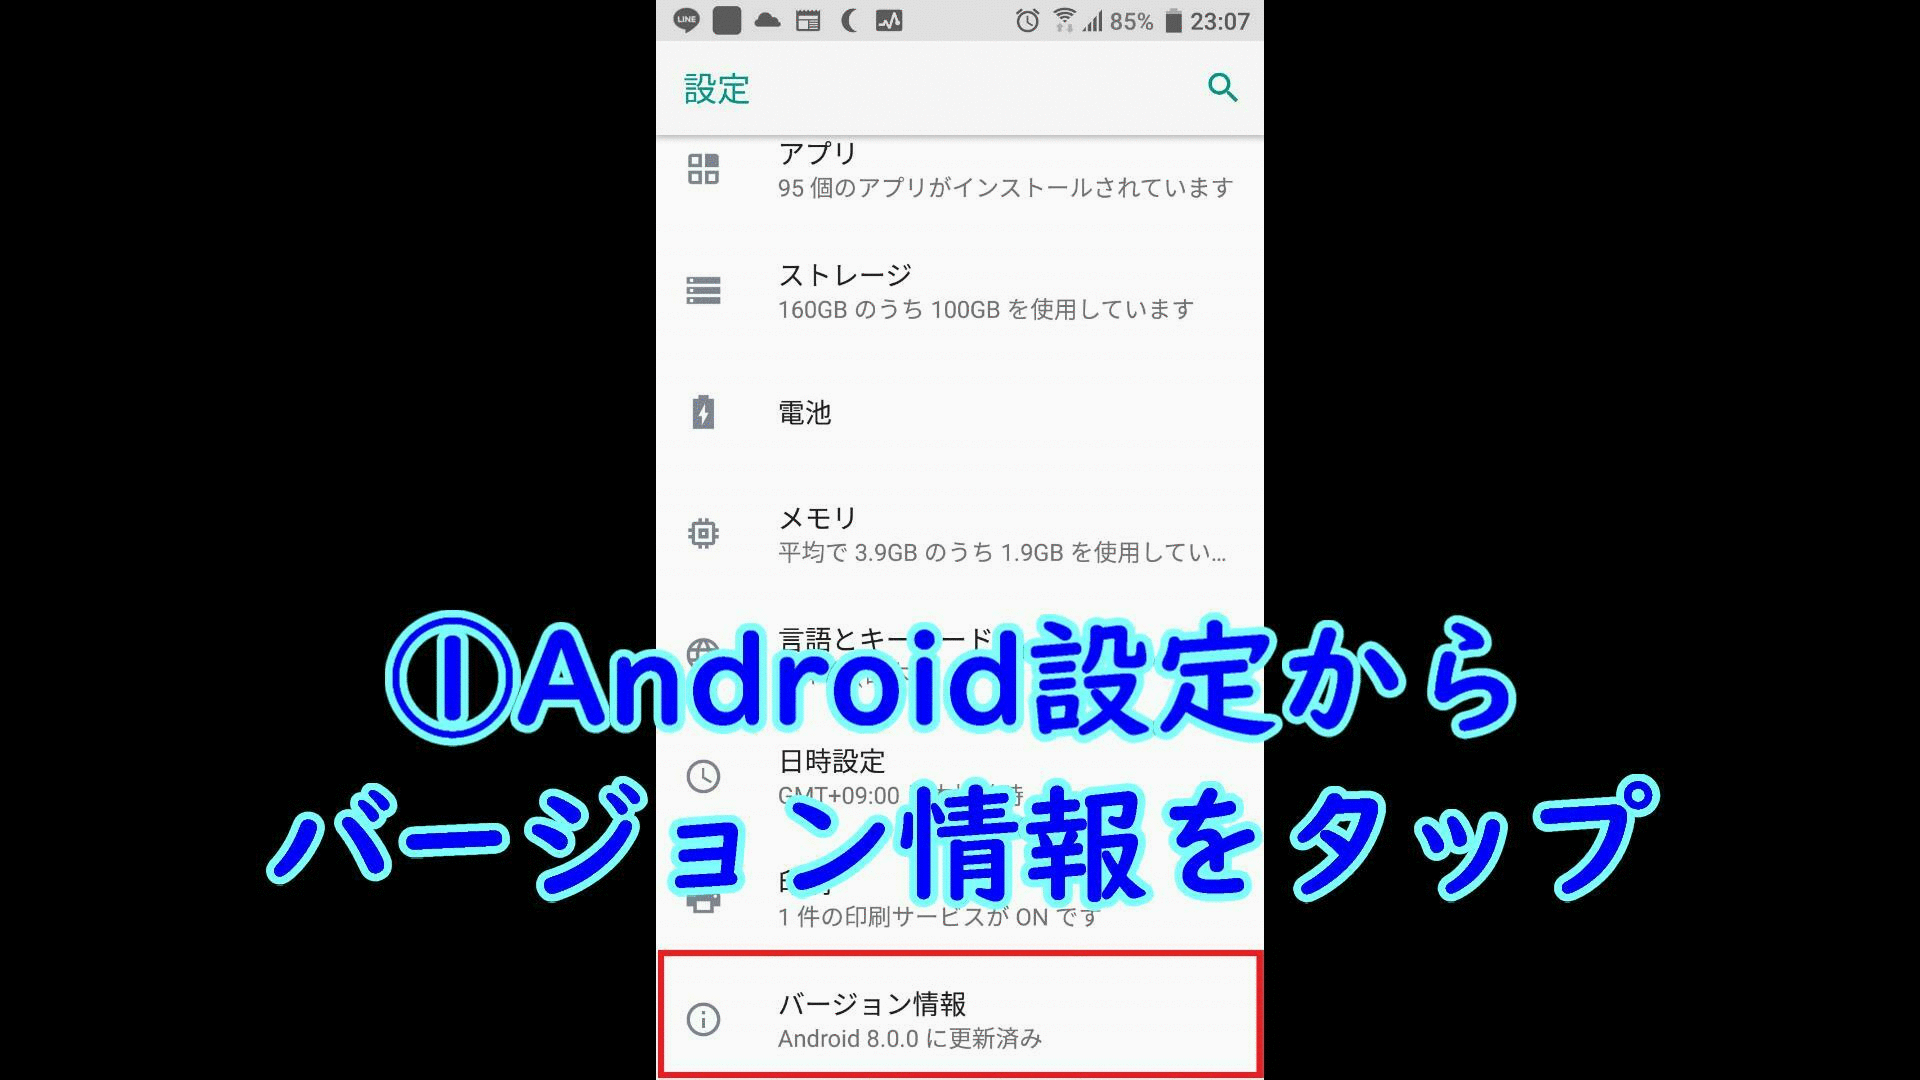 Androidスマホ開発者モードへ変更